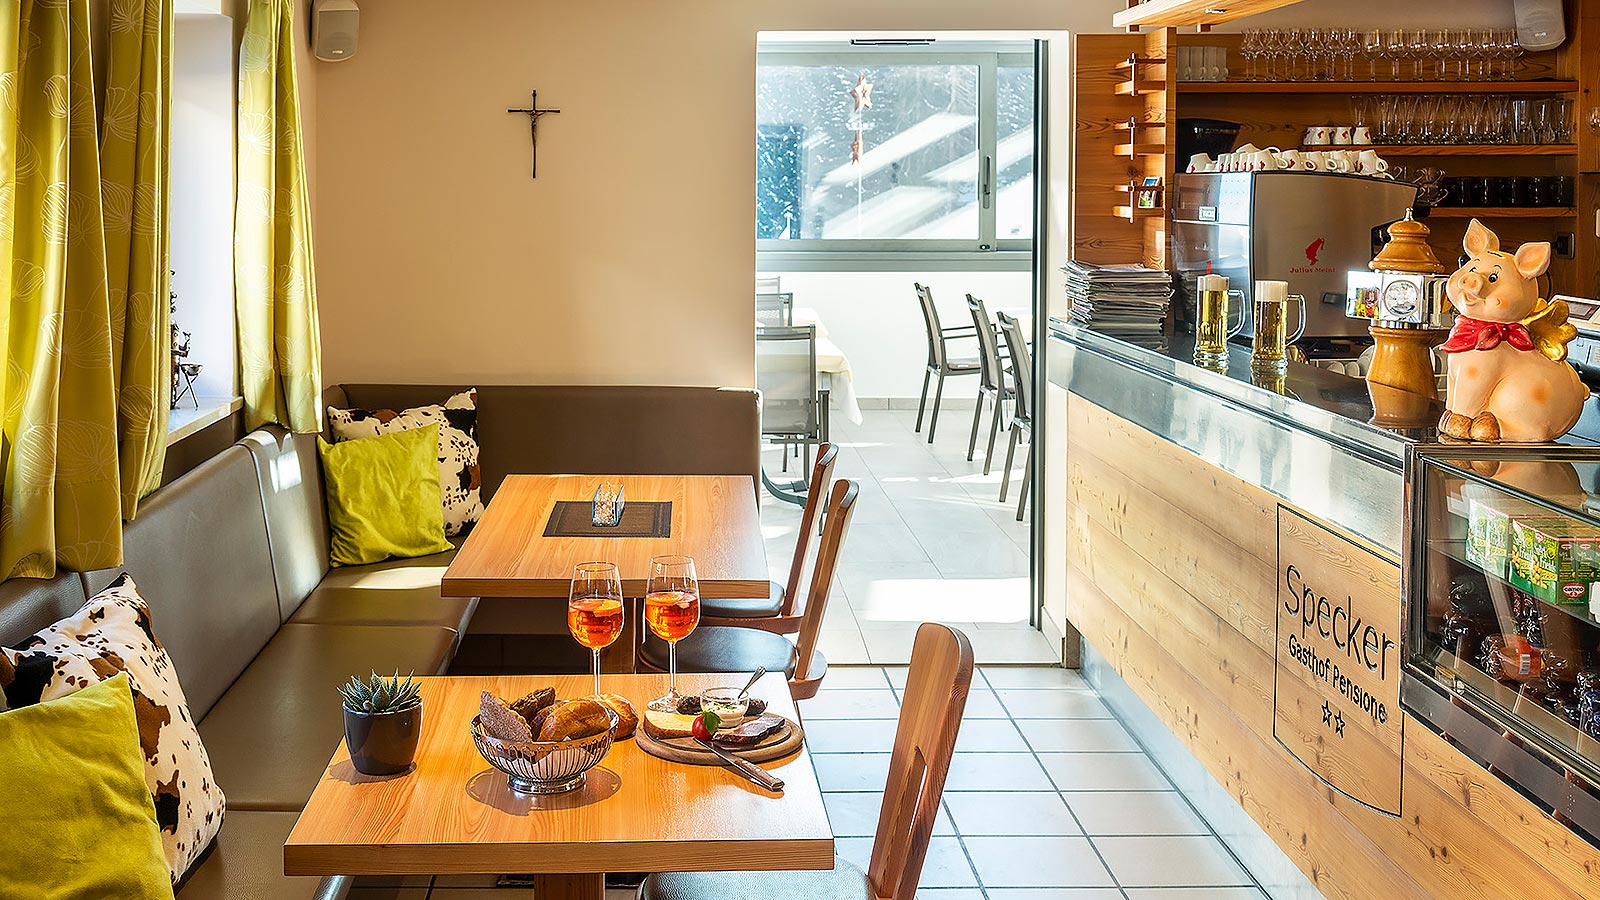 die Bar des Gasthof Specker in Obereggen, auf einem Tisch sind zwei Veneziani und ein Brotkorb